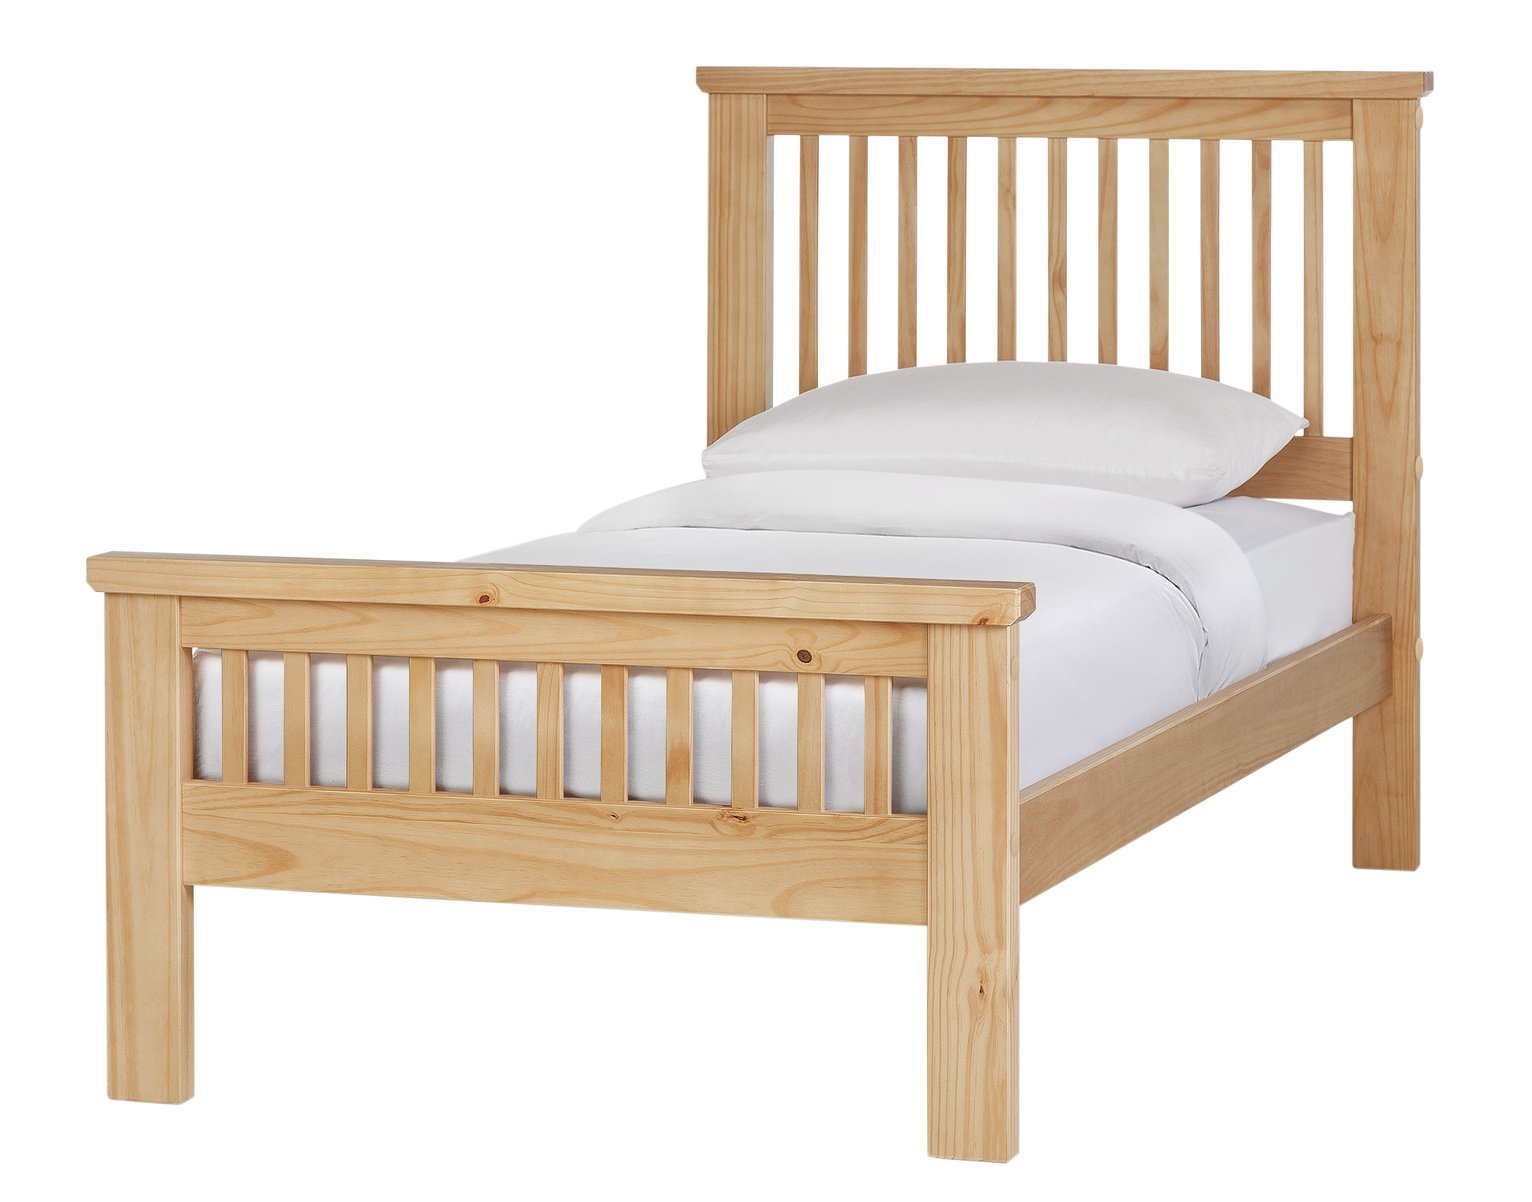 Argos Home Aubrey Single Wooden Bed Frame - Oak Stain